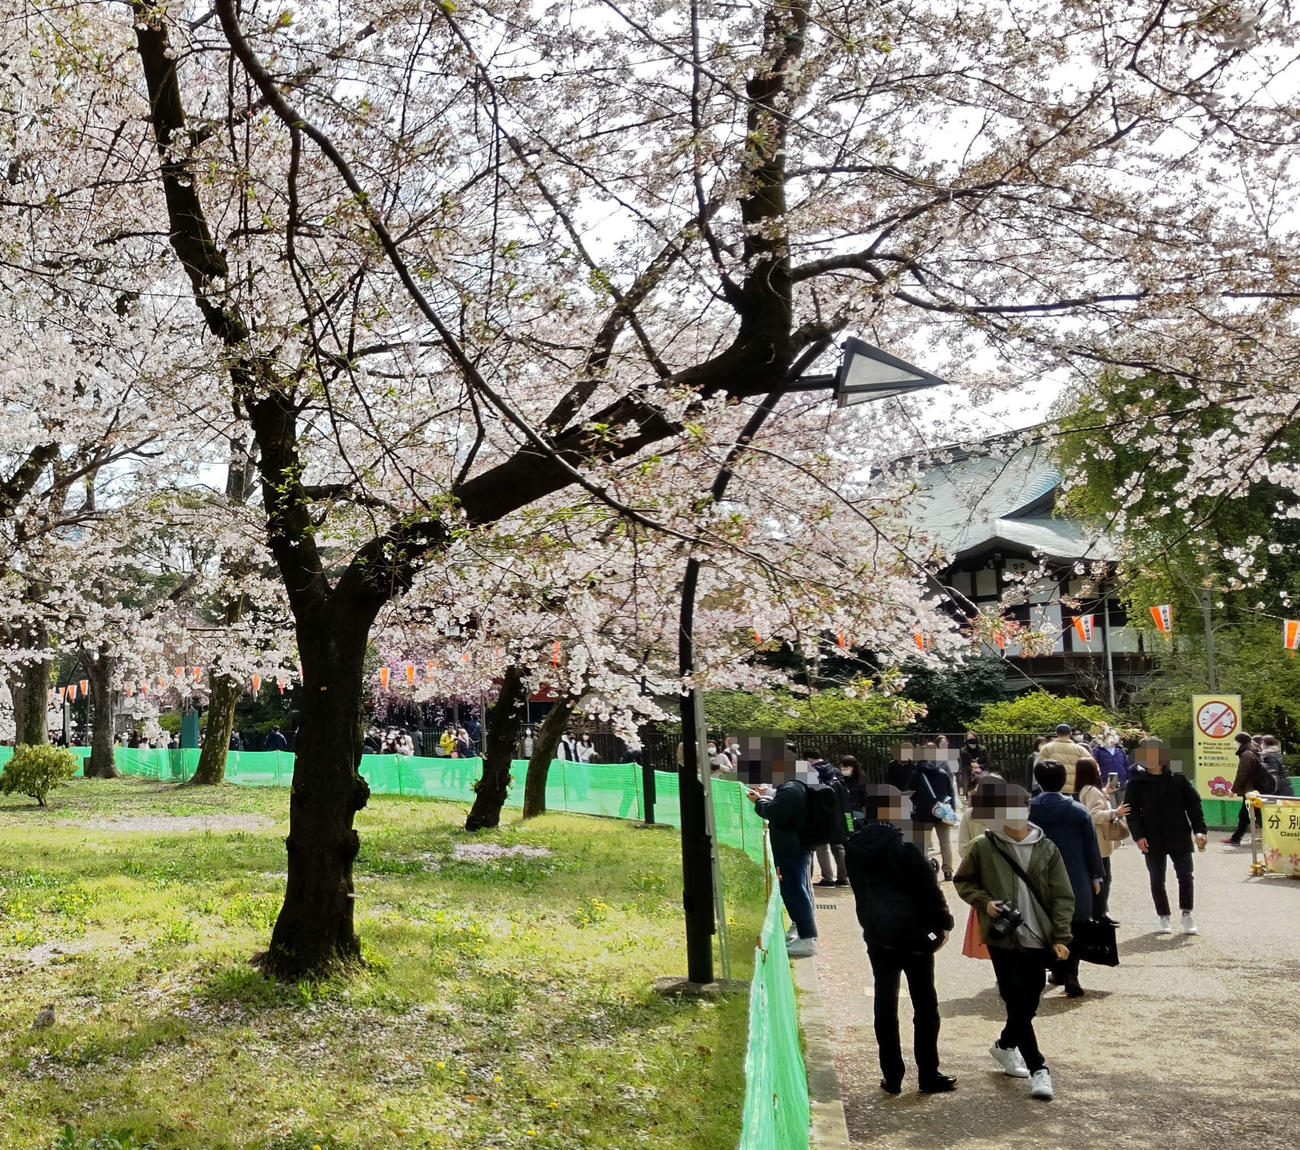 上野公園では桜の木が密集している場所には簡易フェンスが張り巡らされ、侵入禁止エリアになっていた（撮影・寺沢卓）※一部加工